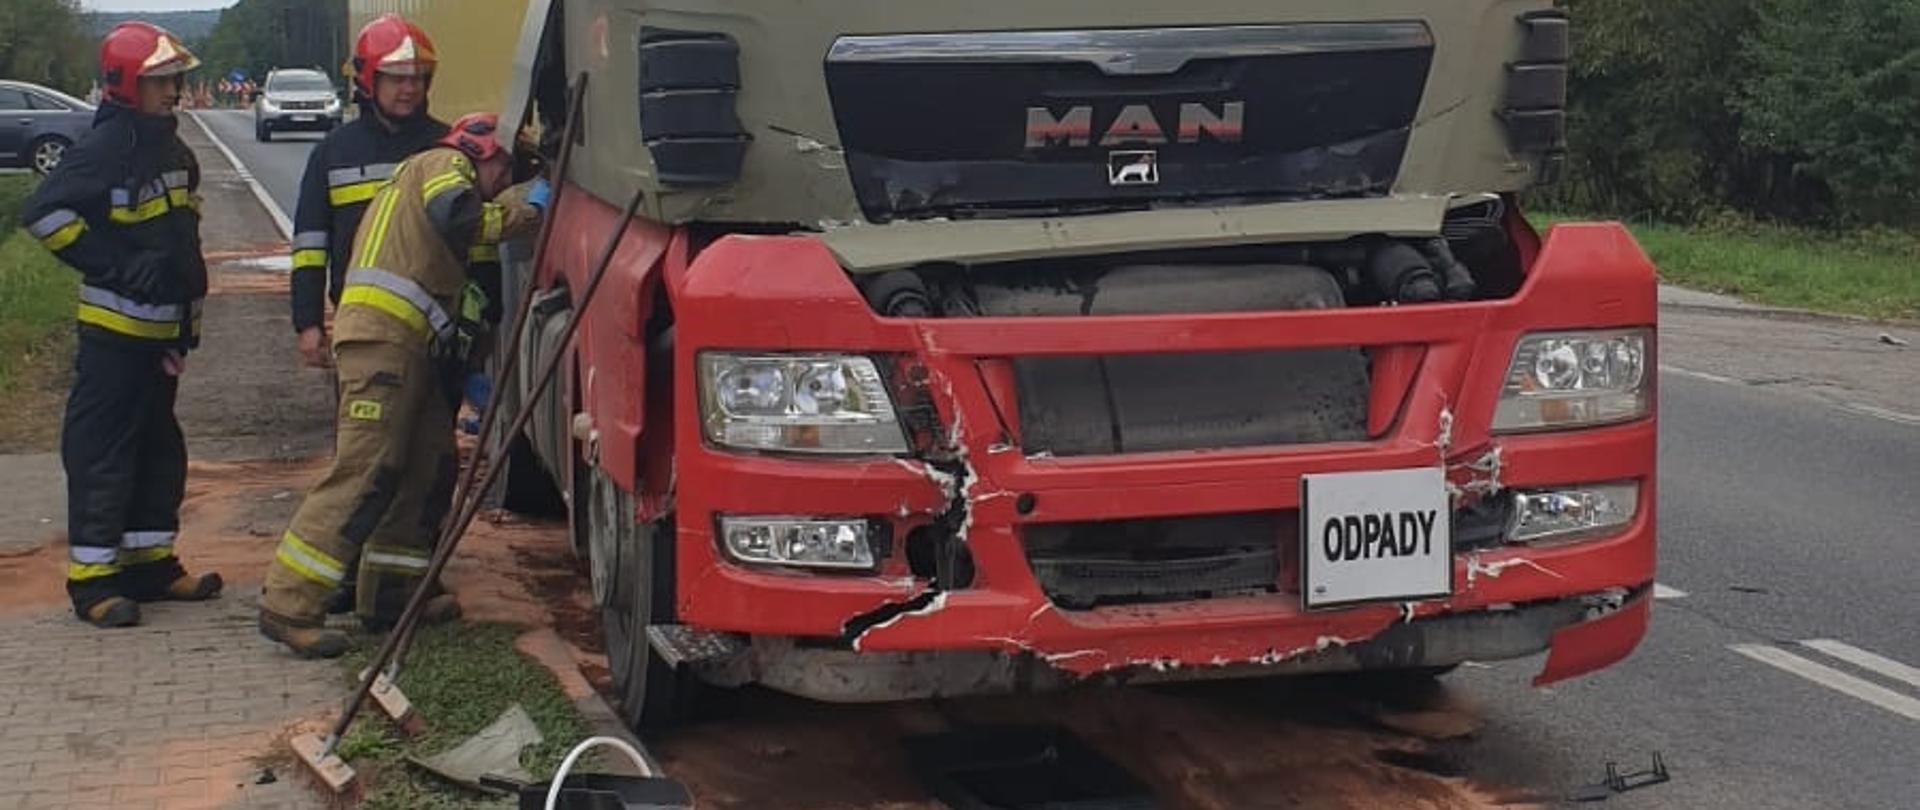 Zdjęcie uszkodzoną ciężarówkę po wypadku drogowym. Przy niej stoi trzech strażaków odłączając akumulator w pojeździe.